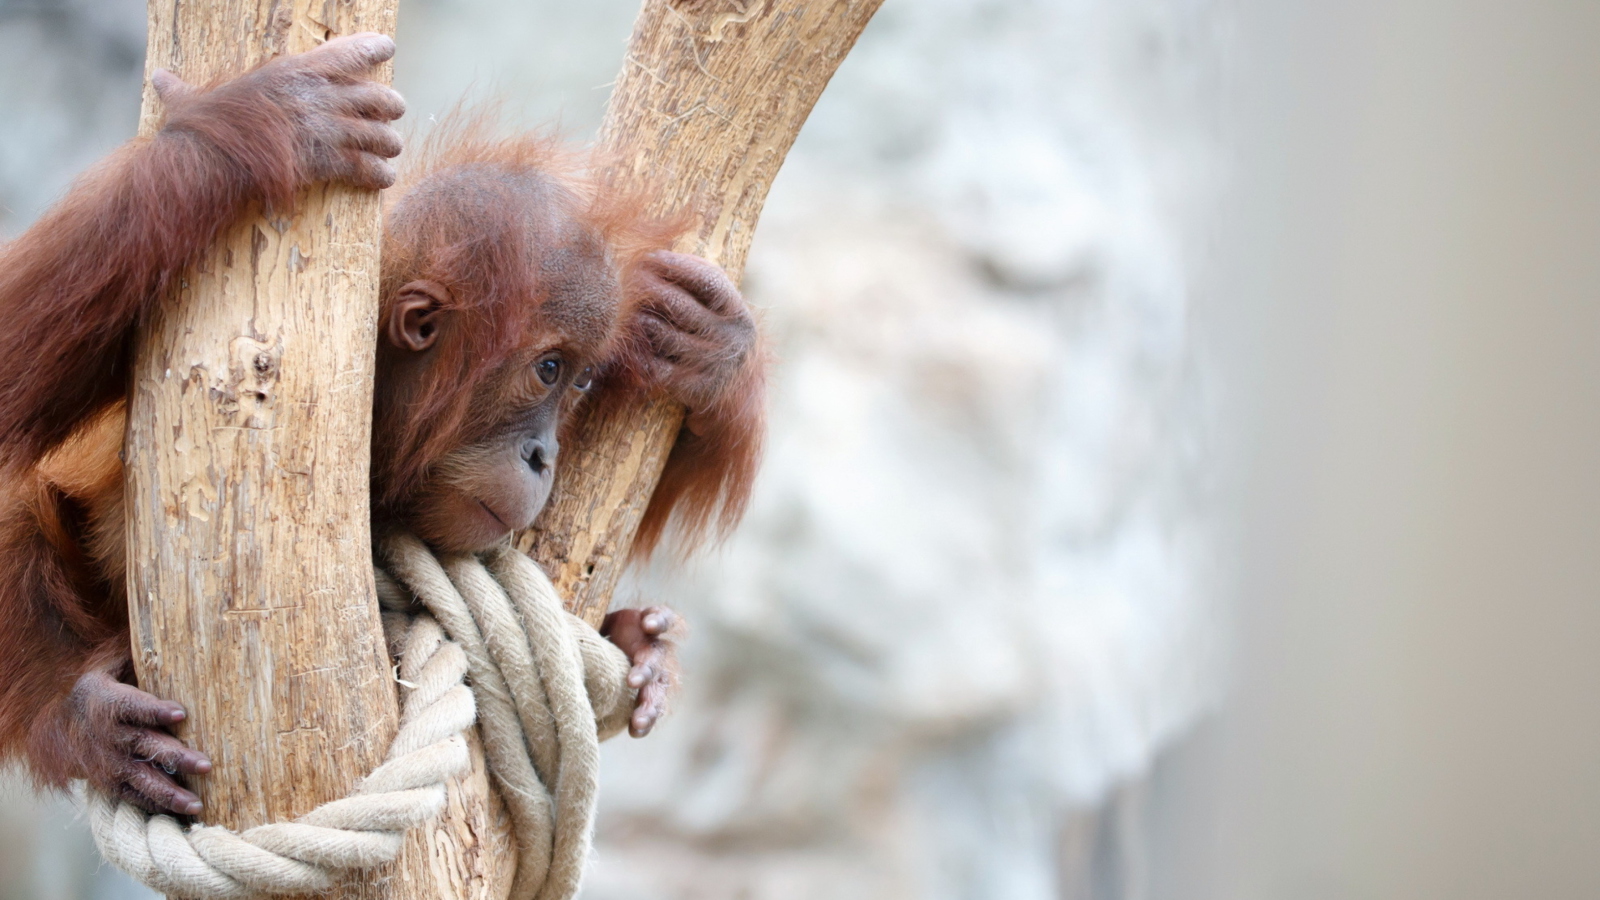 Обои Cute Little Monkey In Zoo 1600x900